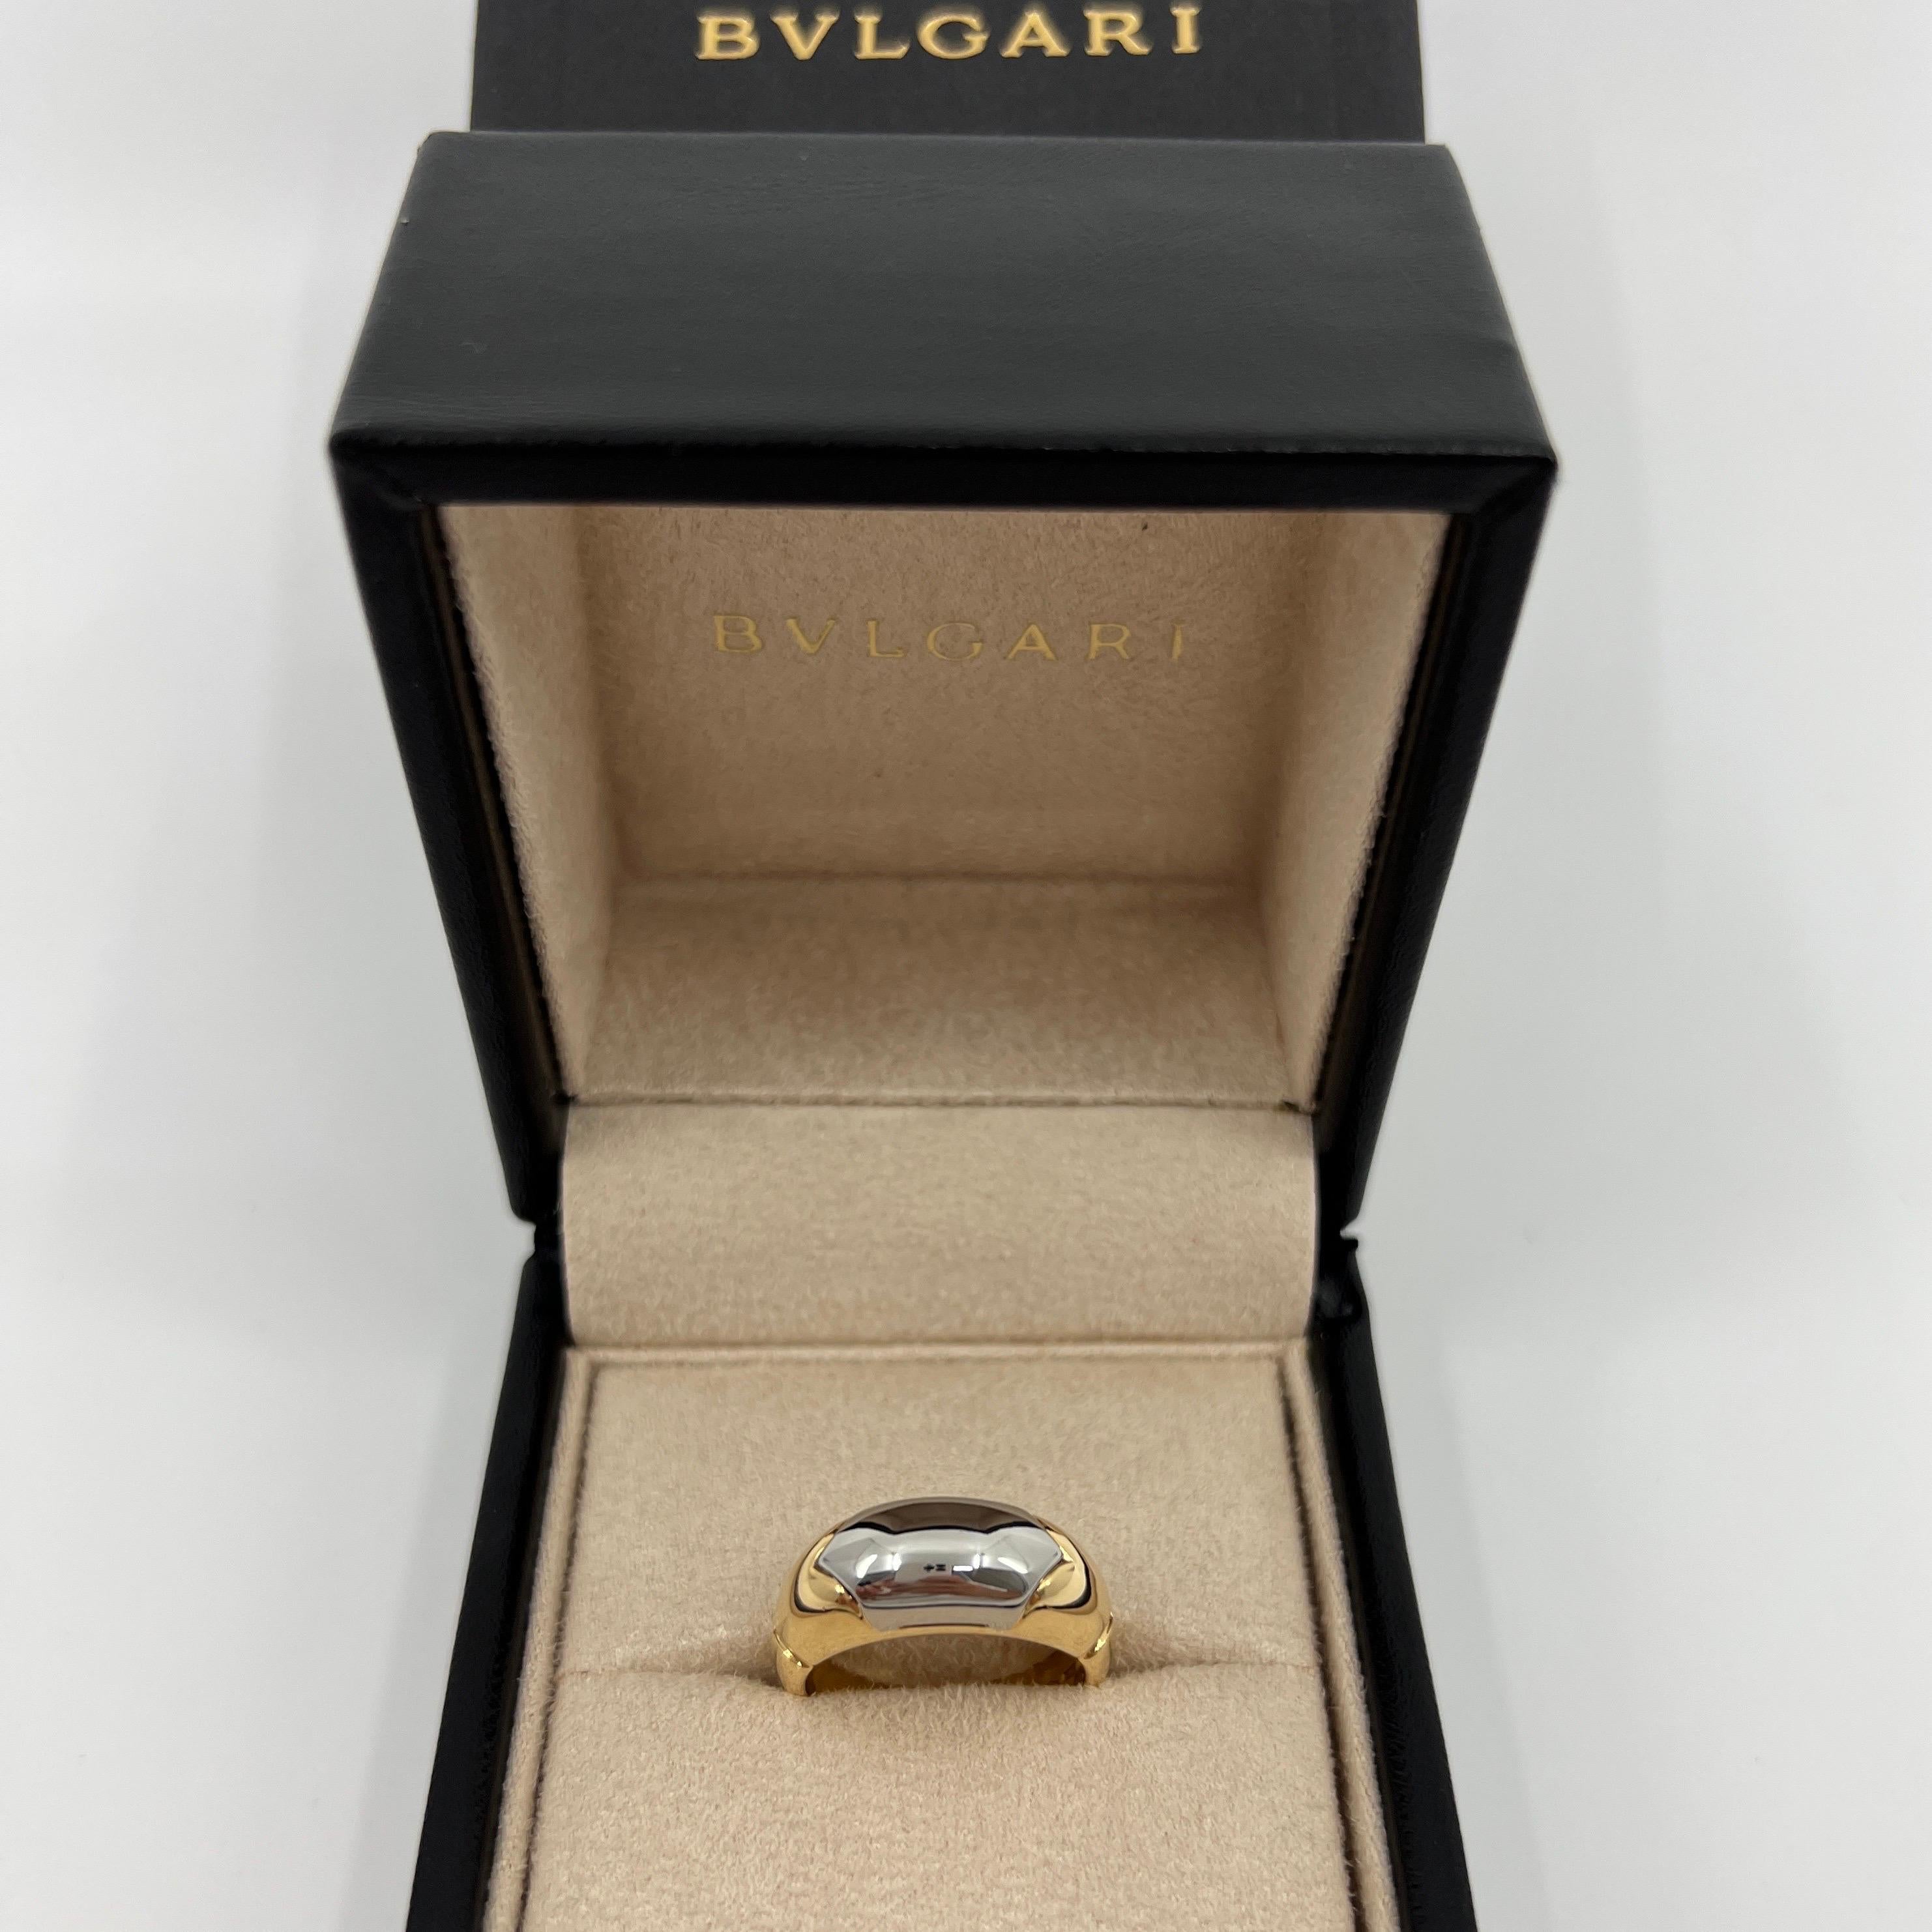 Seltene Bvlgari Certica 18k Gelbgold & Stahl Band Dome Ring.

Schöner gewölbter, hochglanzpolierter Stahl, eingefasst in einen feinen Ring aus 18-karätigem Gelbgold aus der Certica-Kollektion.

In ausgezeichnetem Zustand, wurde professionell poliert